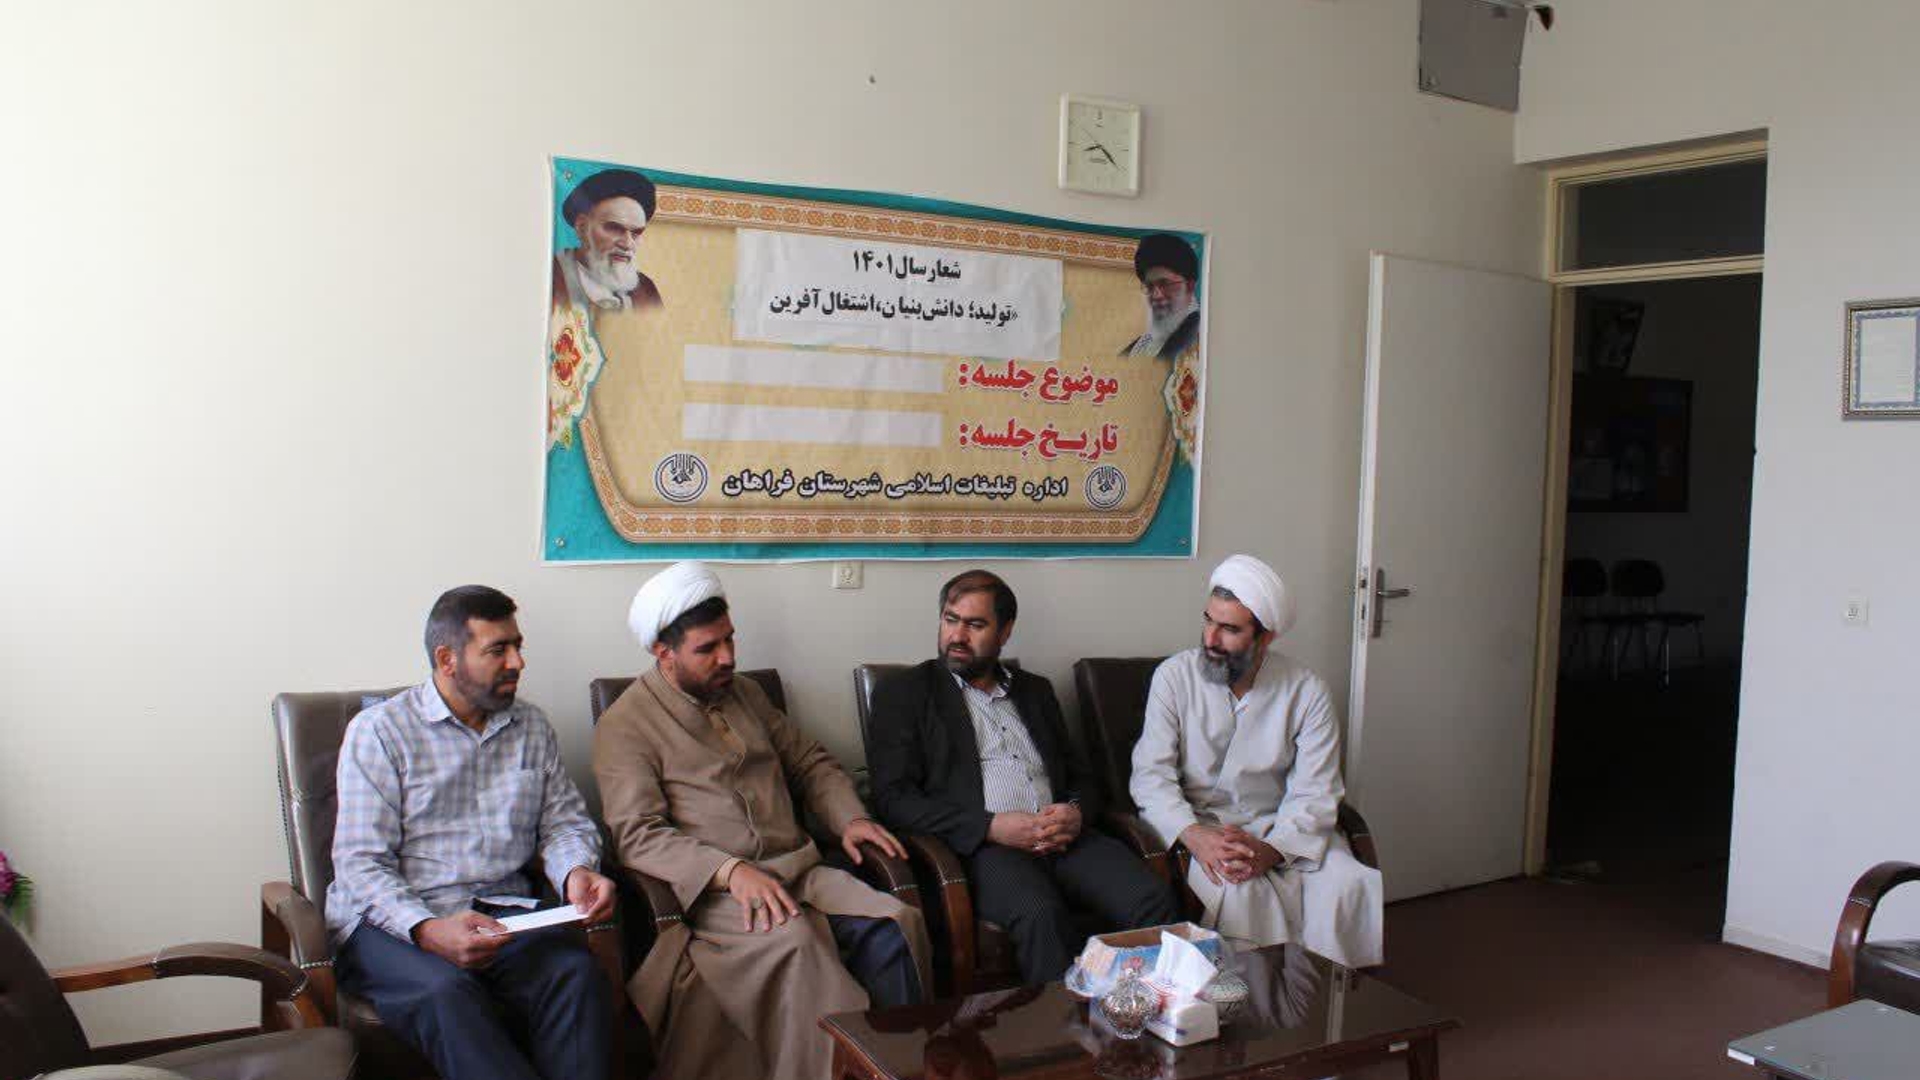 ششمین دوره انتخابات شورای هیئات مذهبی شهرستان فراهان برگزارگردید